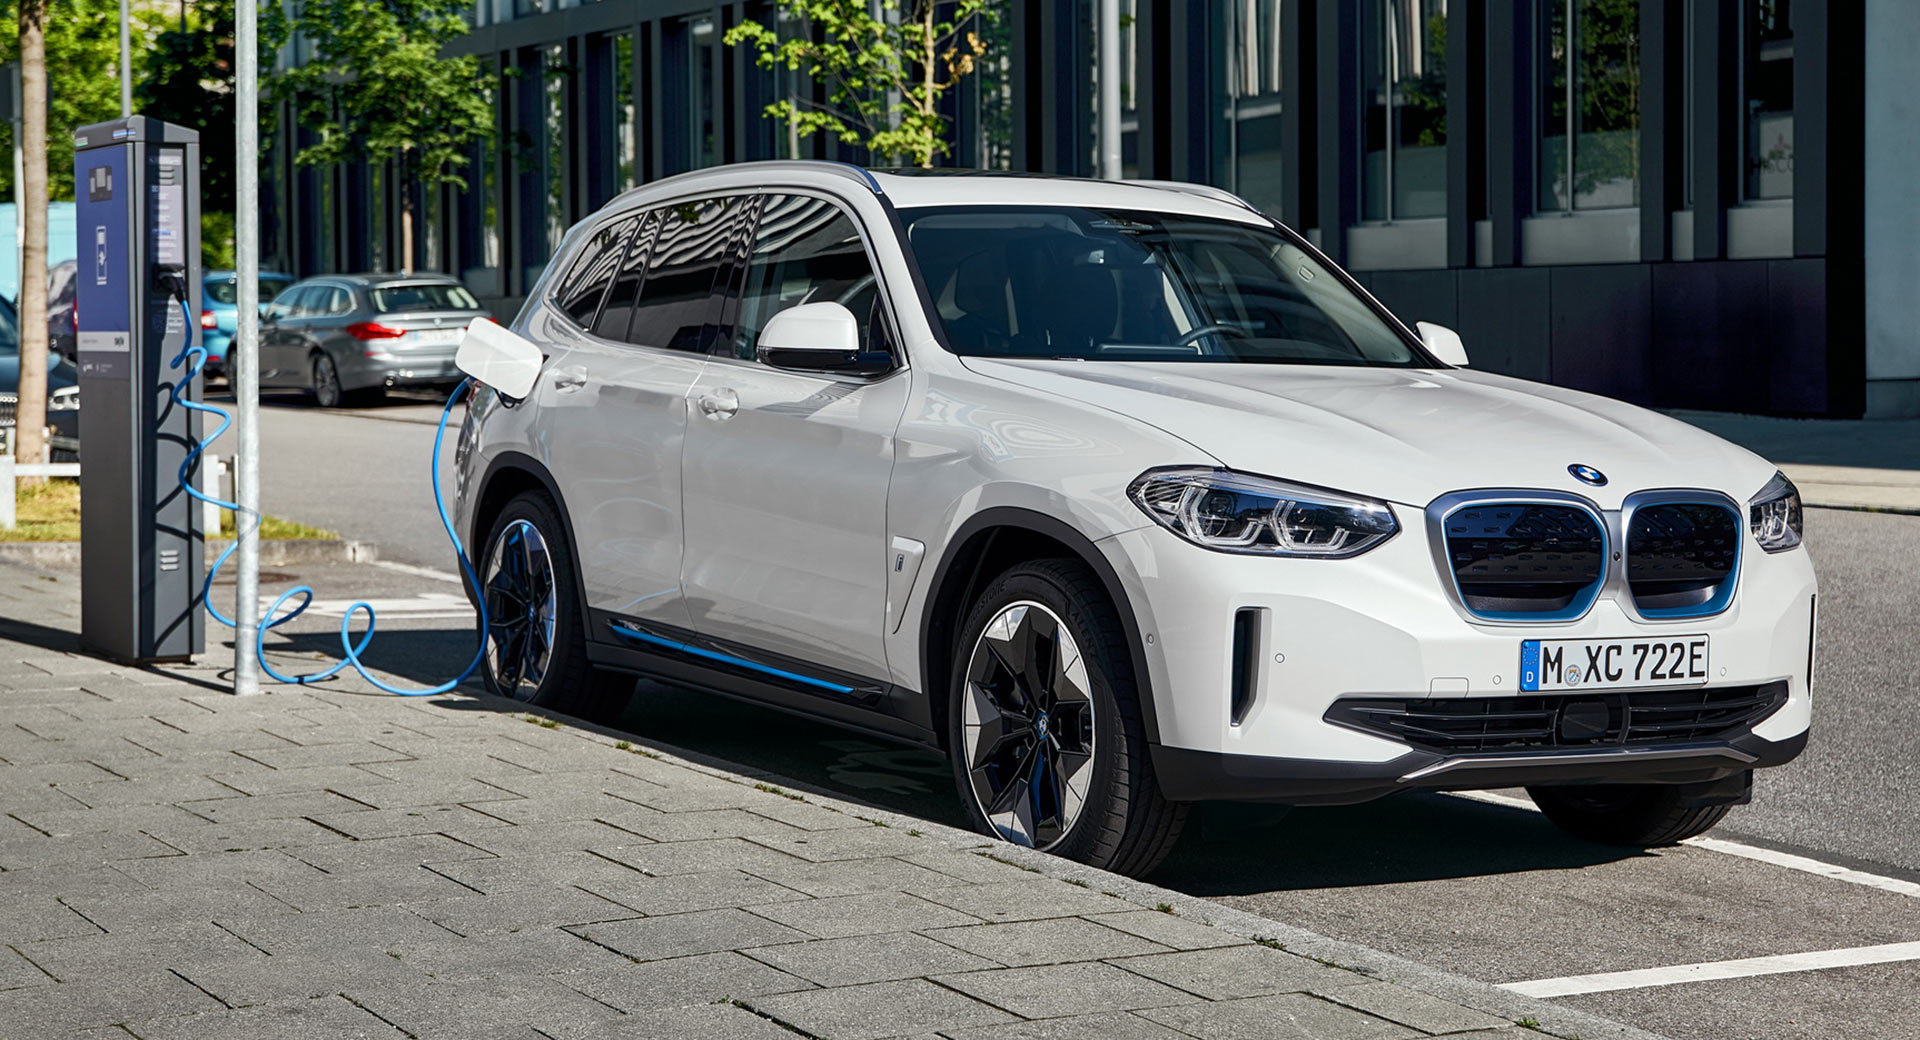 BMW Signs A $2.3 Billion Battery Deal With Sweden’s Northvolt